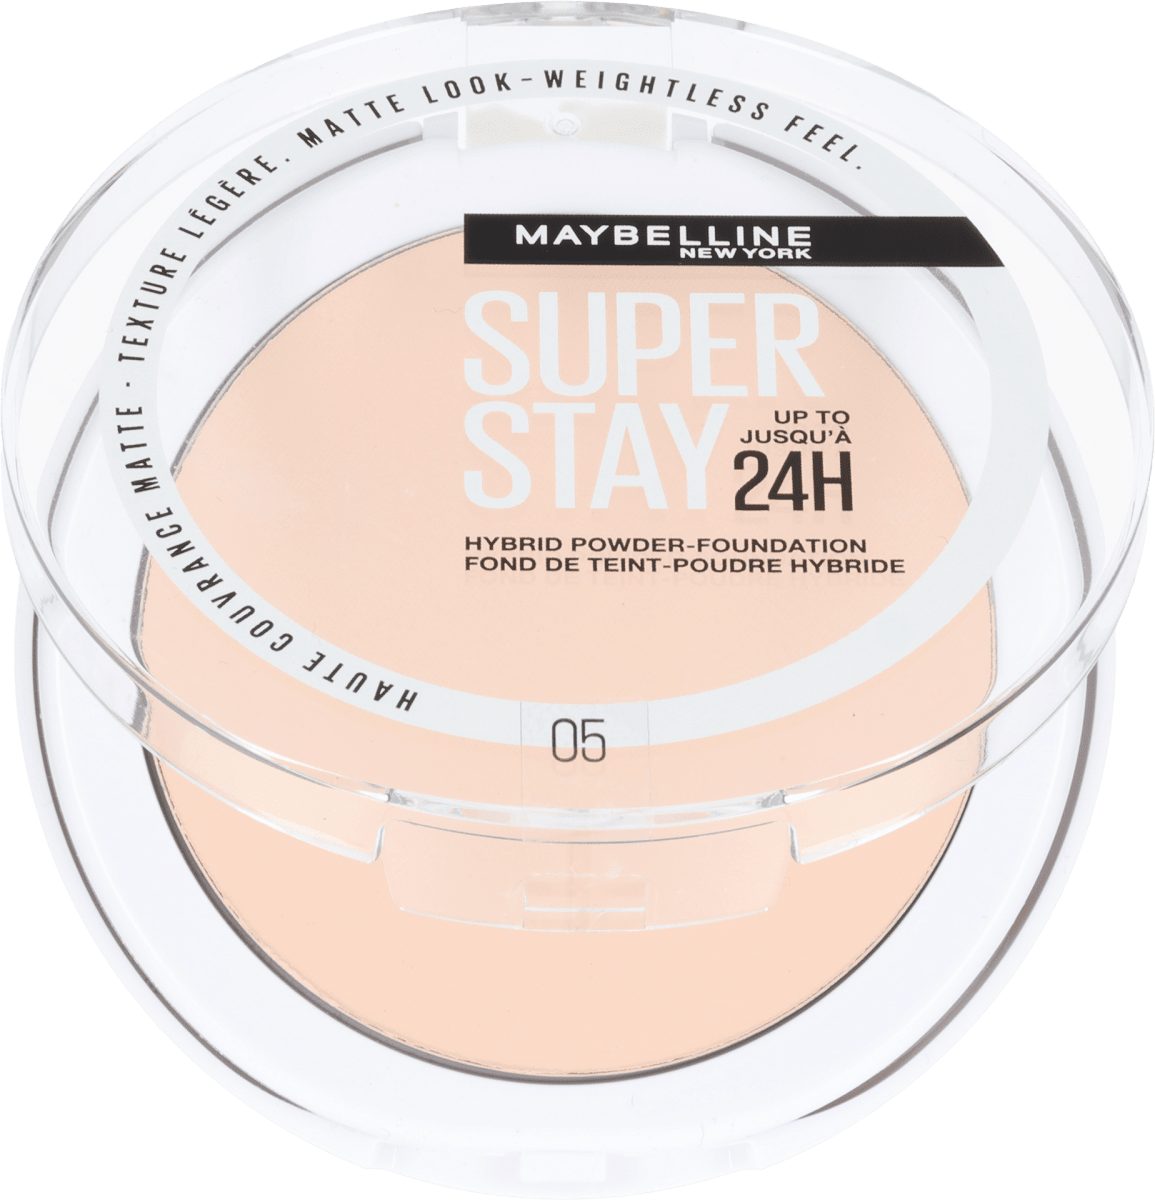 Maybelline New York SUPER STAY 24H HYBRID POWDER FOUNDATION 05, 9 g kupuj  online, zawsze w najniższych cenach | Drogeria dm